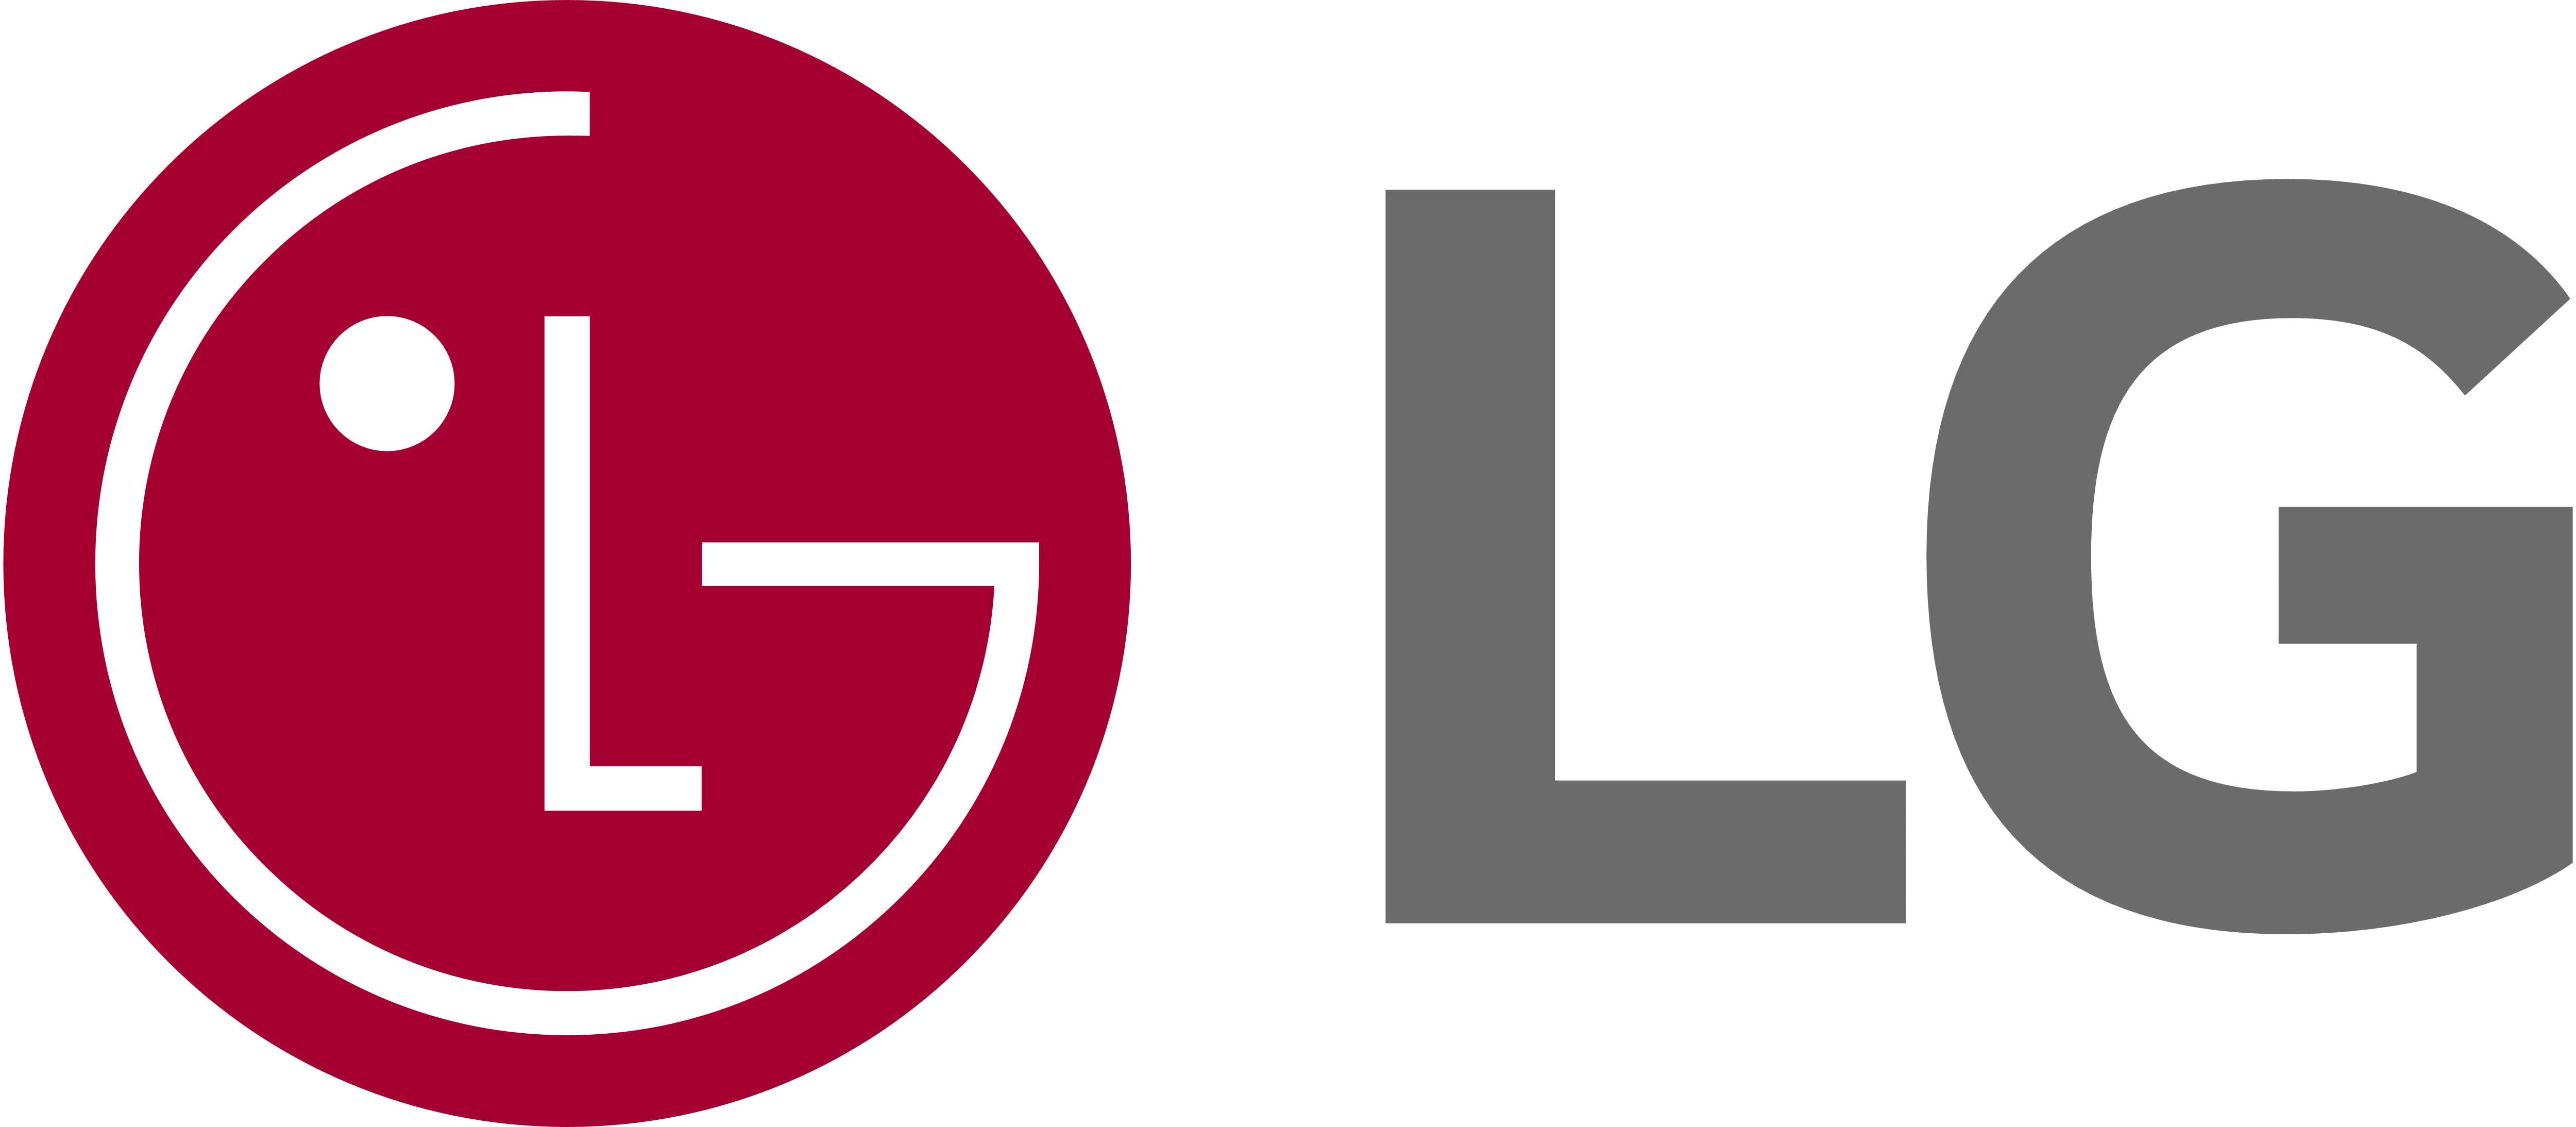 LG Home Dryer Repair, GE Dryer Repair